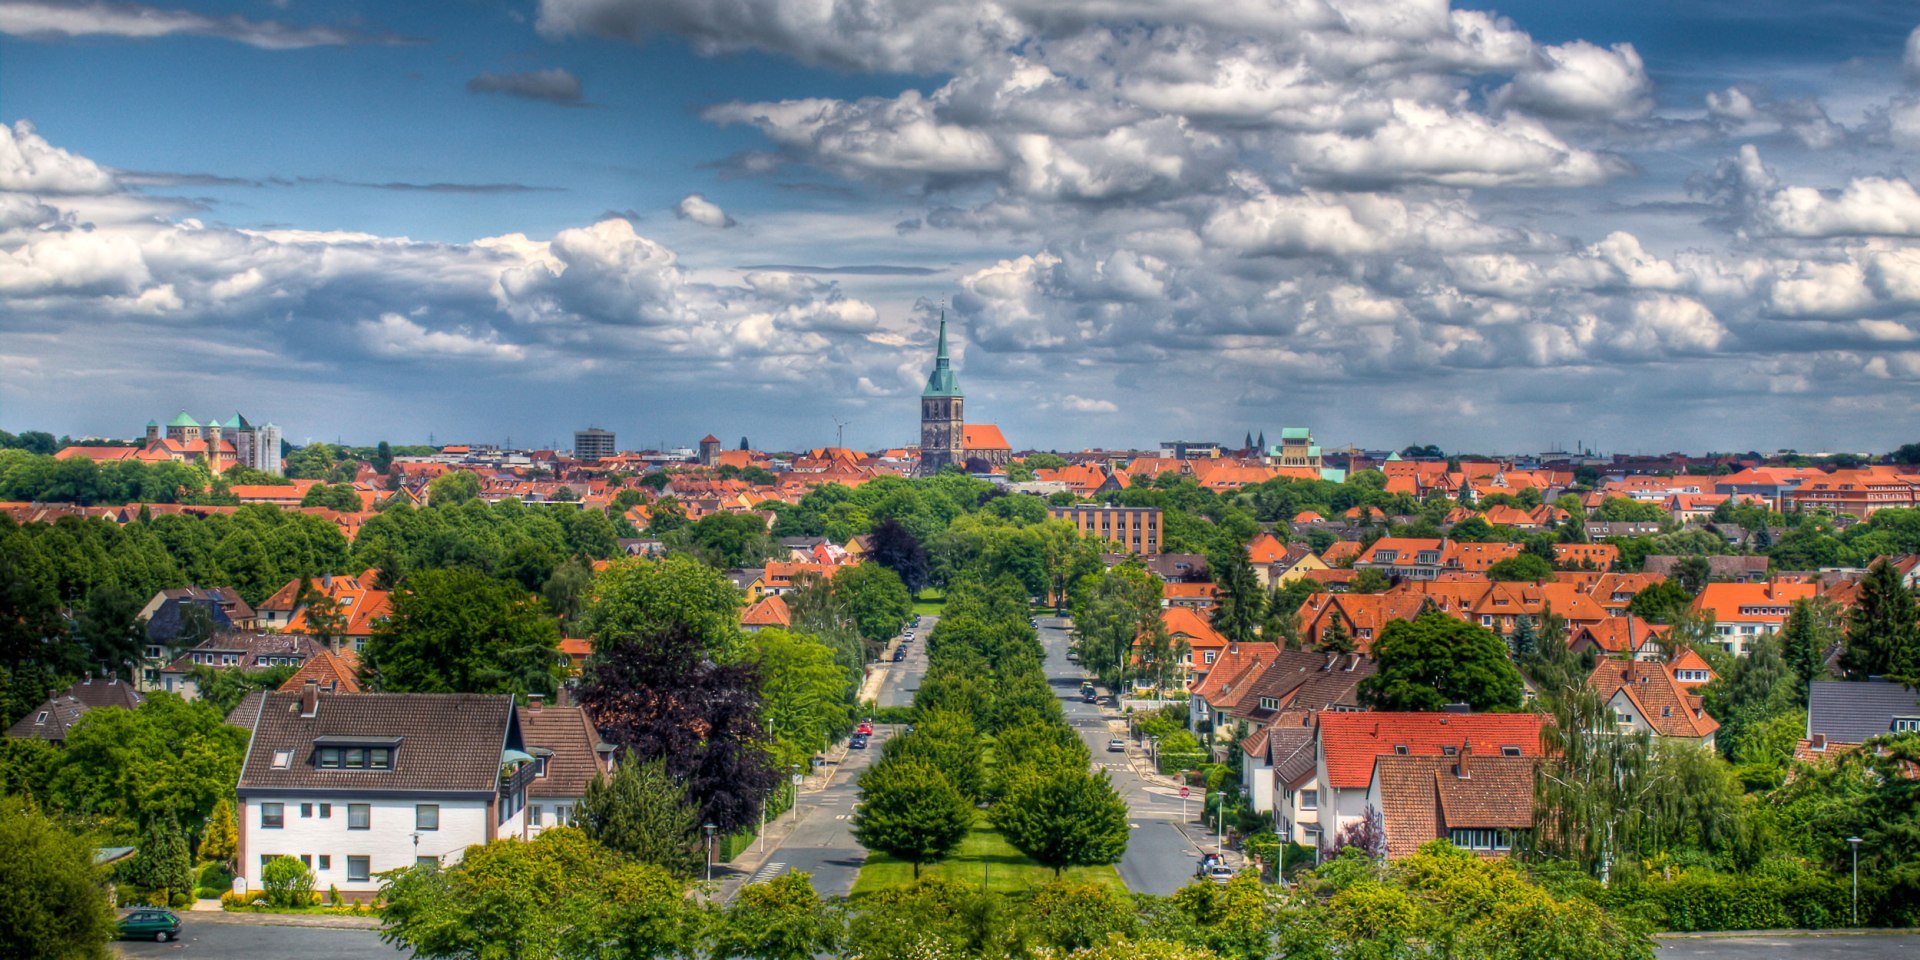 Panoramaudsigt Hildesheim, © Hildesheim Marketing / Daniel Fröbrich